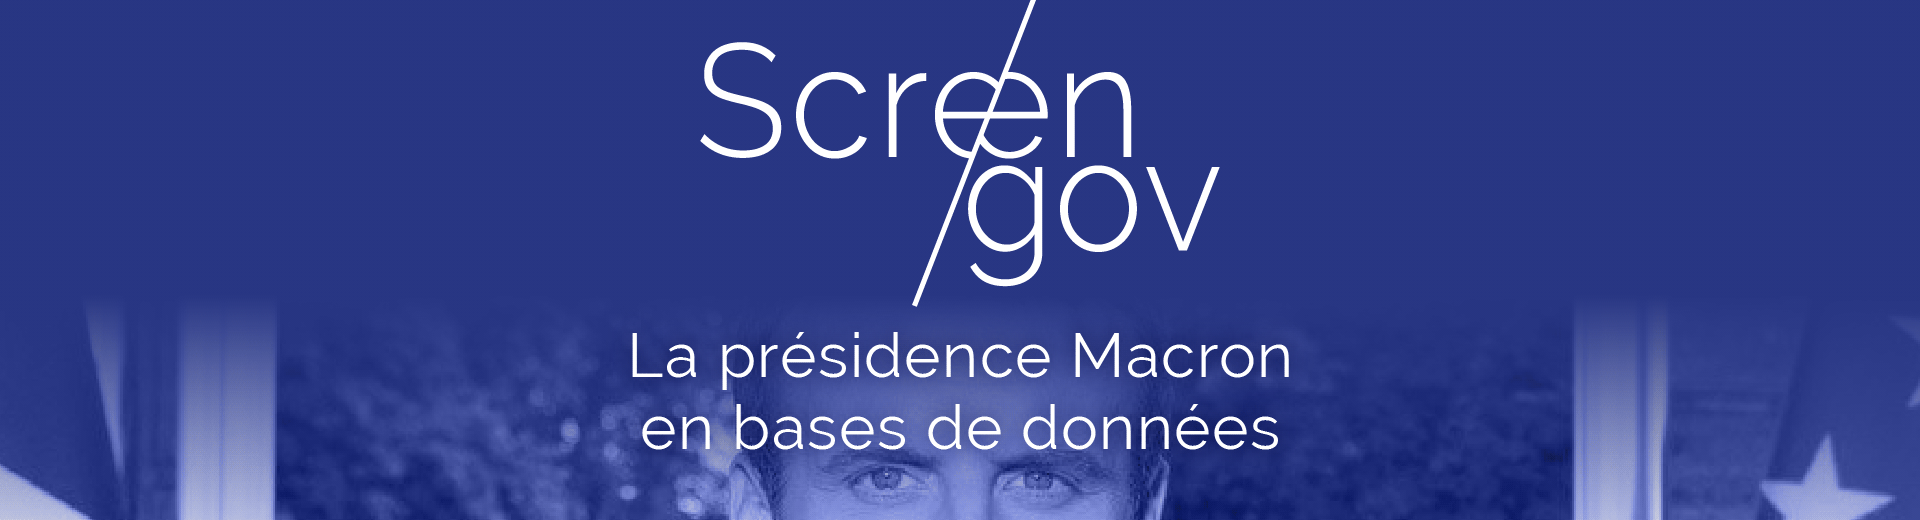 ScreenGov, la présidence Macron en bases de données